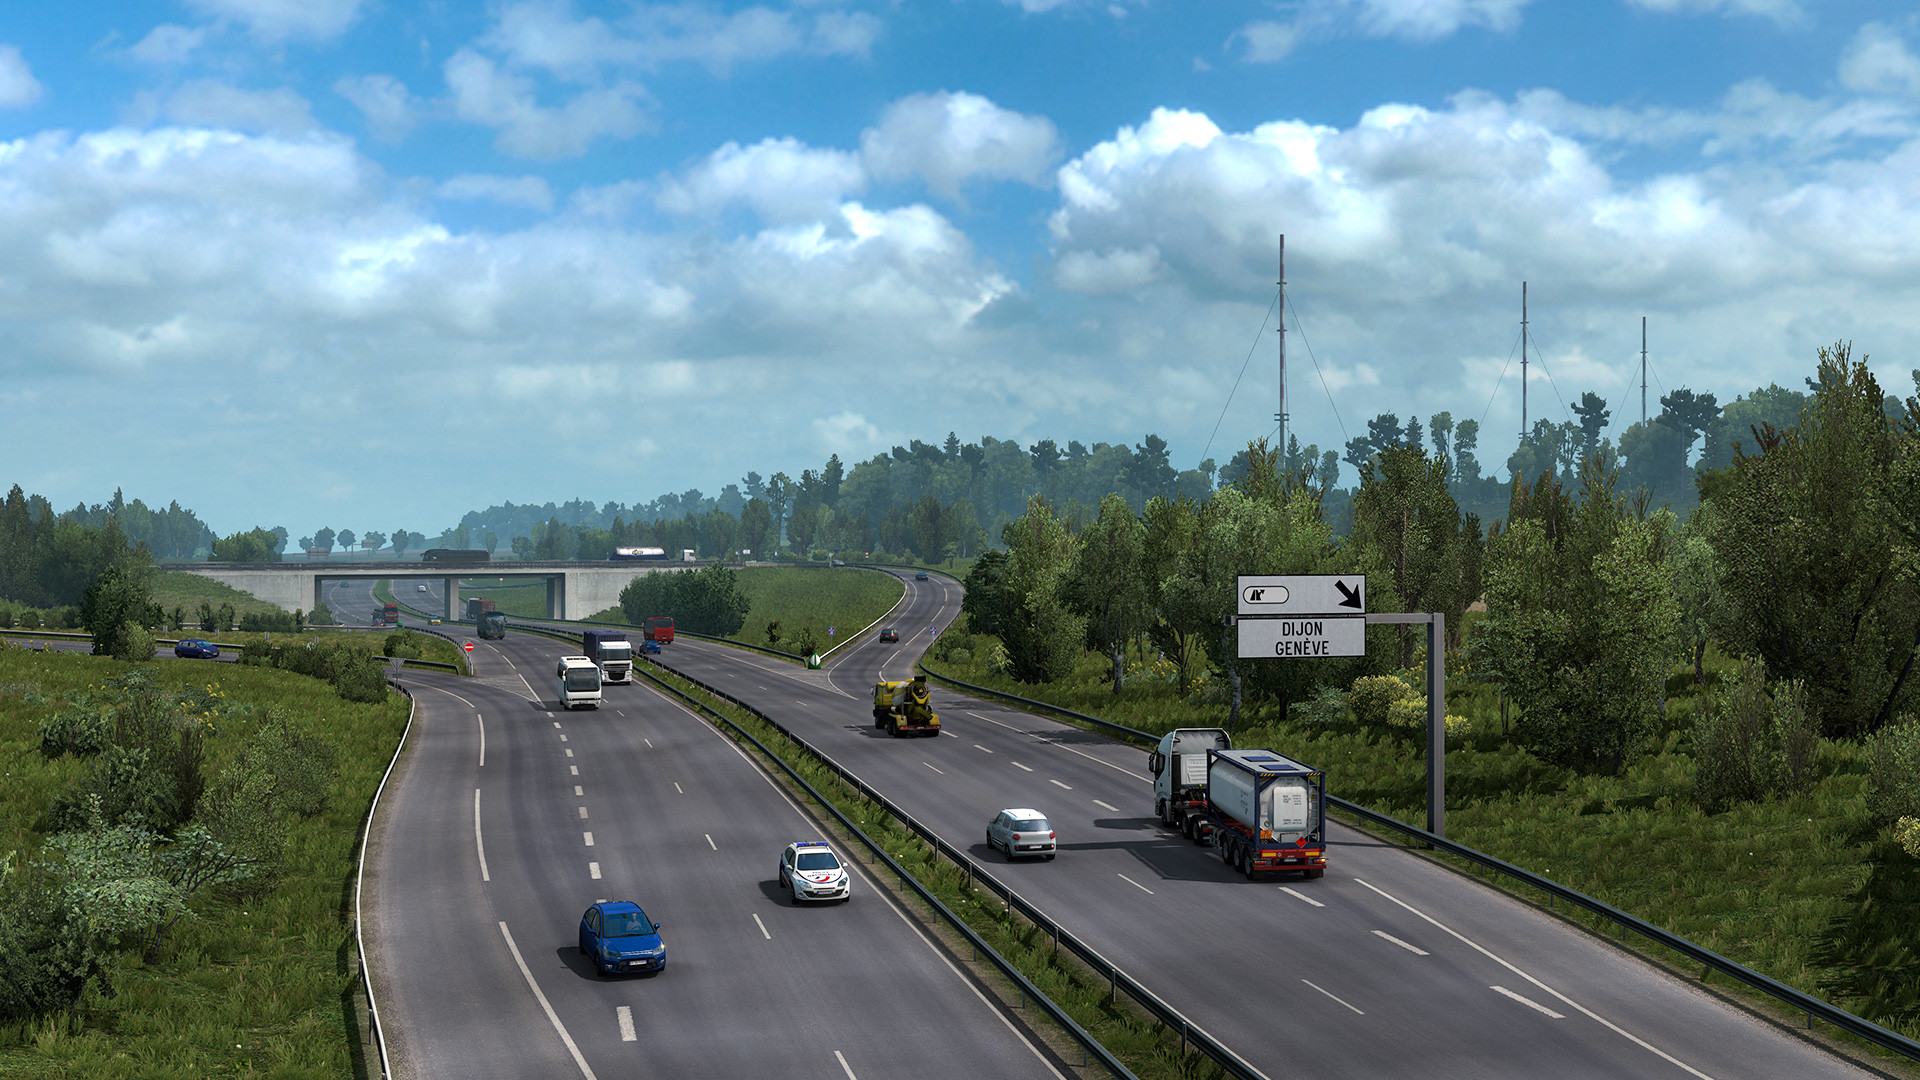 遨游中国2 v1.40稳定版/欧洲模拟卡车2/CTS6/Euro Truck Simulator 2